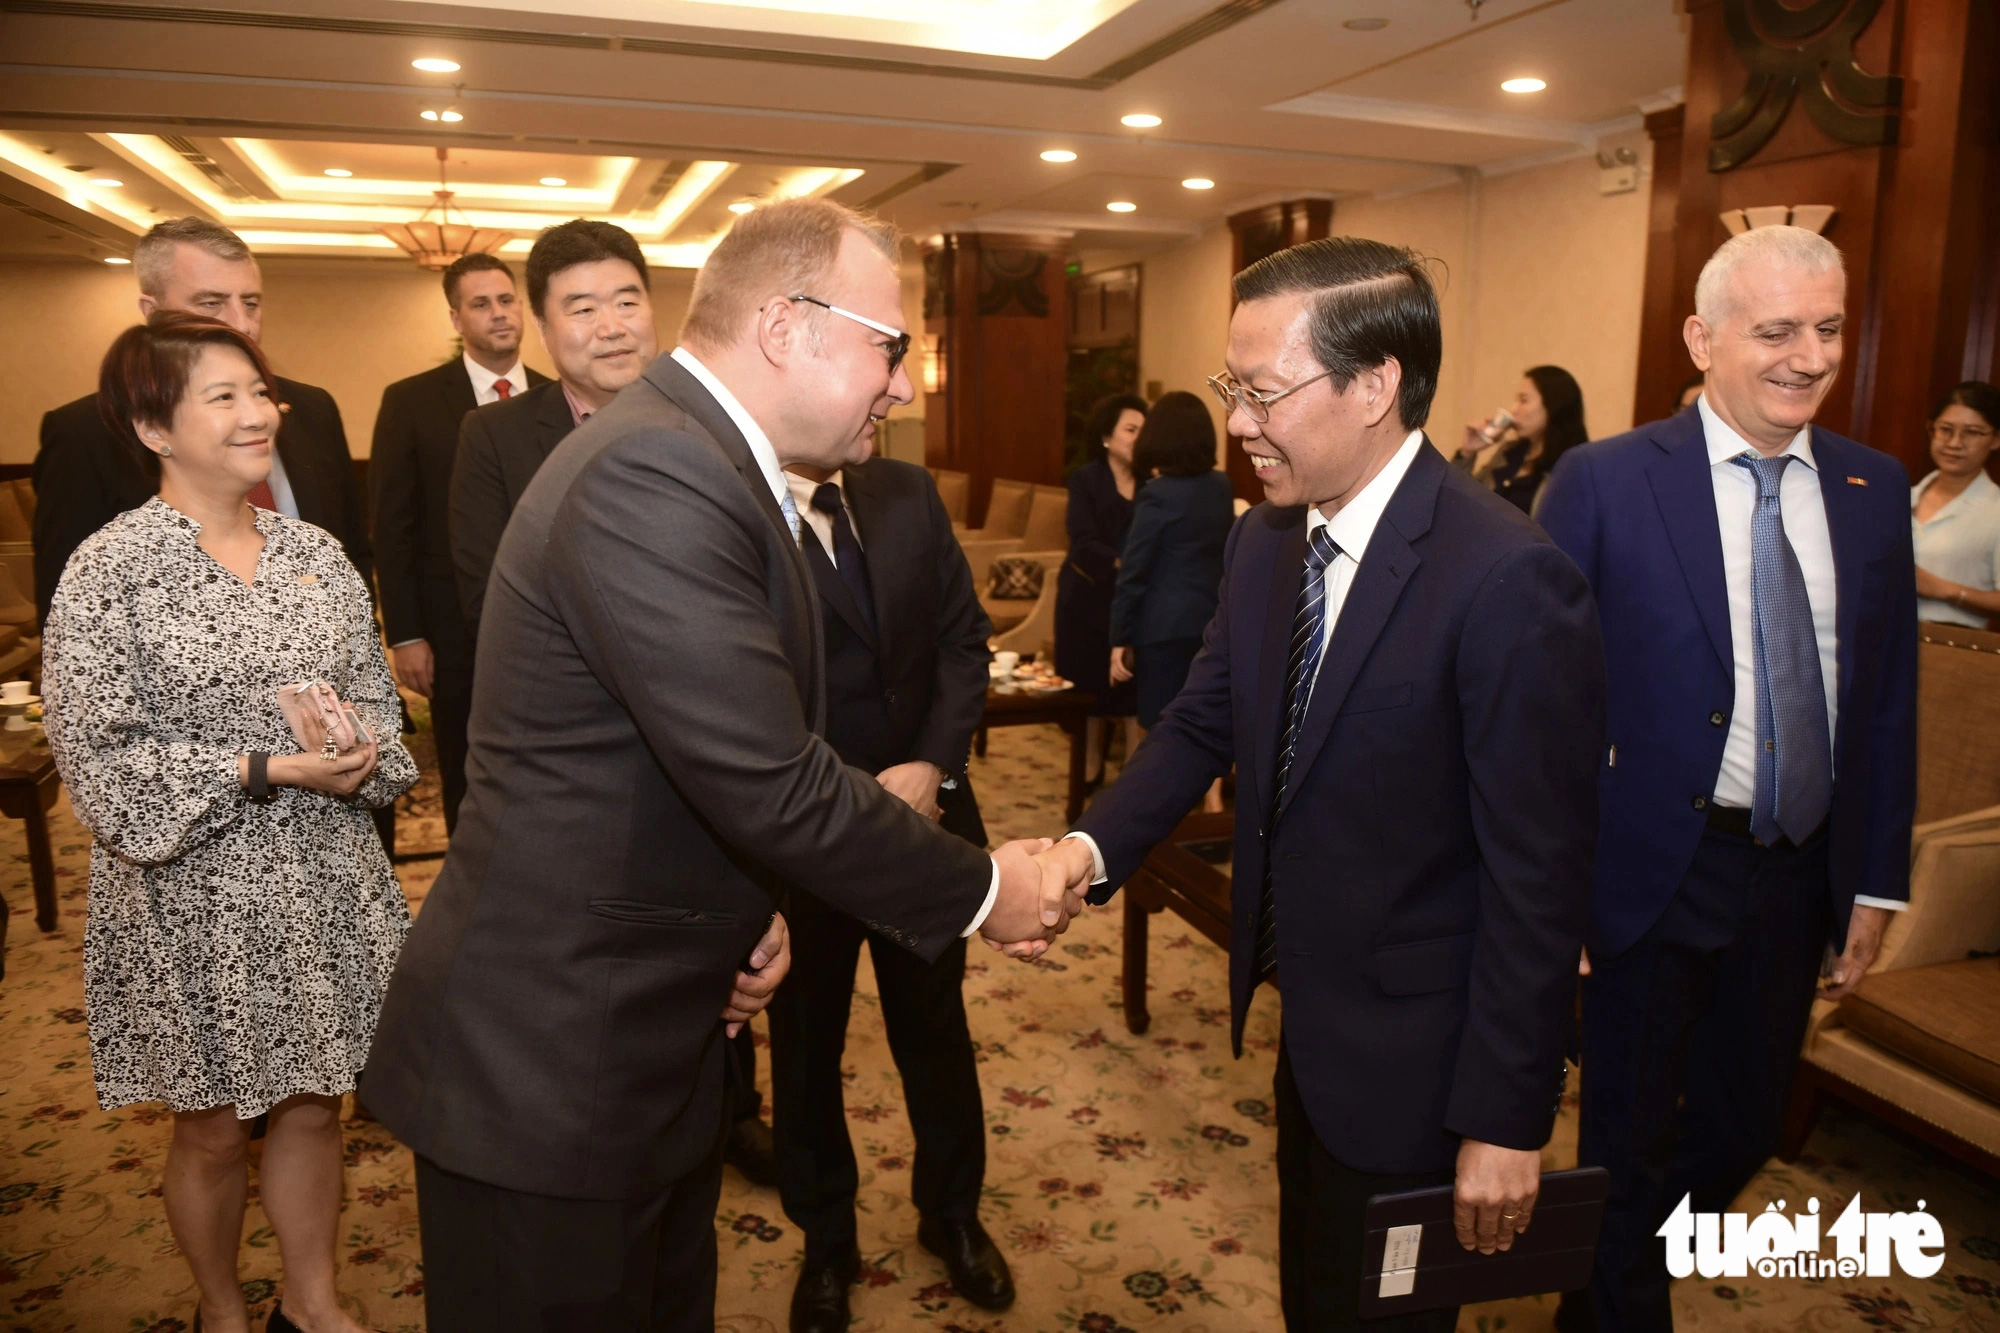 Chủ tịch UBND TP.HCM Phan Văn Mãi trò chuyện với ông Piotr (Peter) Harasimowicz, trưởng đại diện Trung tâm Xúc tiến và đầu tư Ba Lan tại Việt Nam - Ảnh: QUANG ĐỊNH